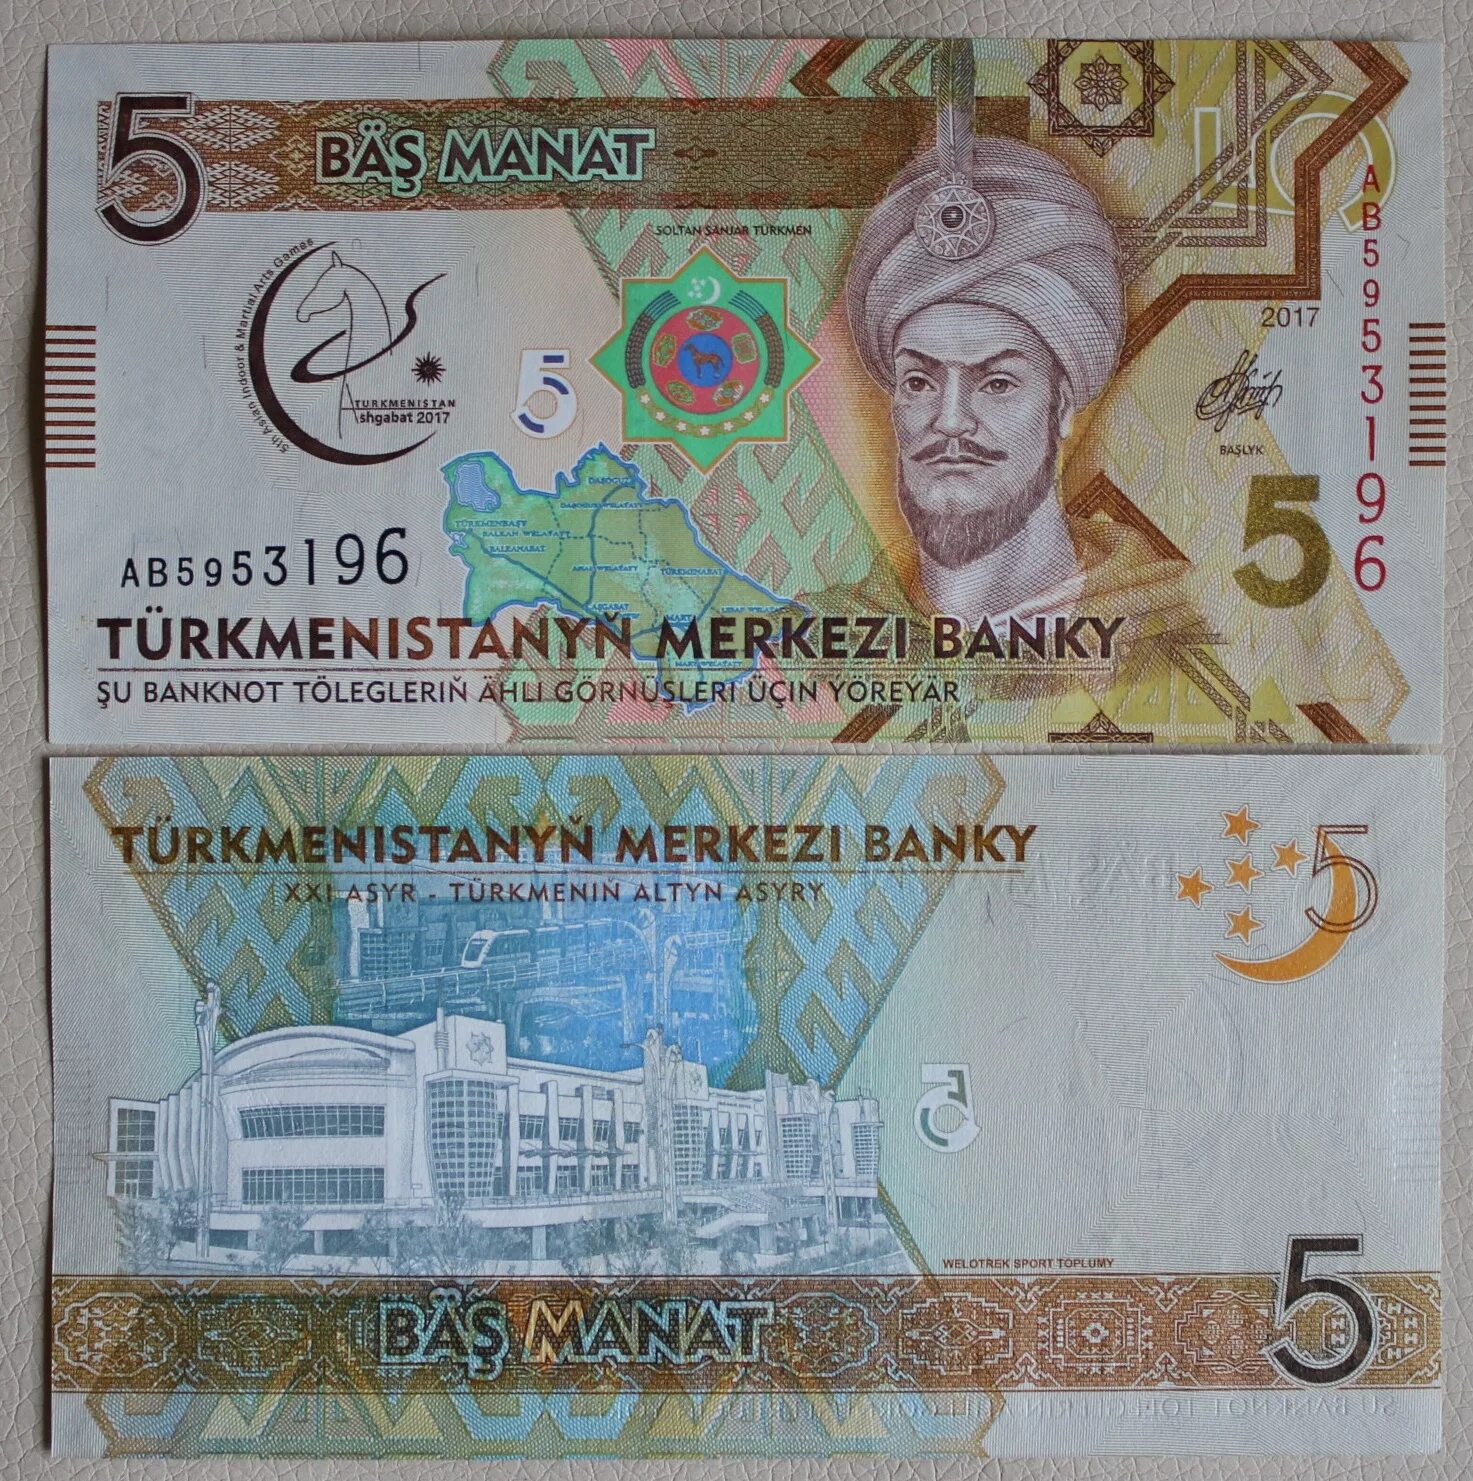 150 манат в рублях. Банкноты Туркмении 5 манат. 1 Манат Туркменистан. Банкнота туркменский манат. Современные банкноты Туркменистана.